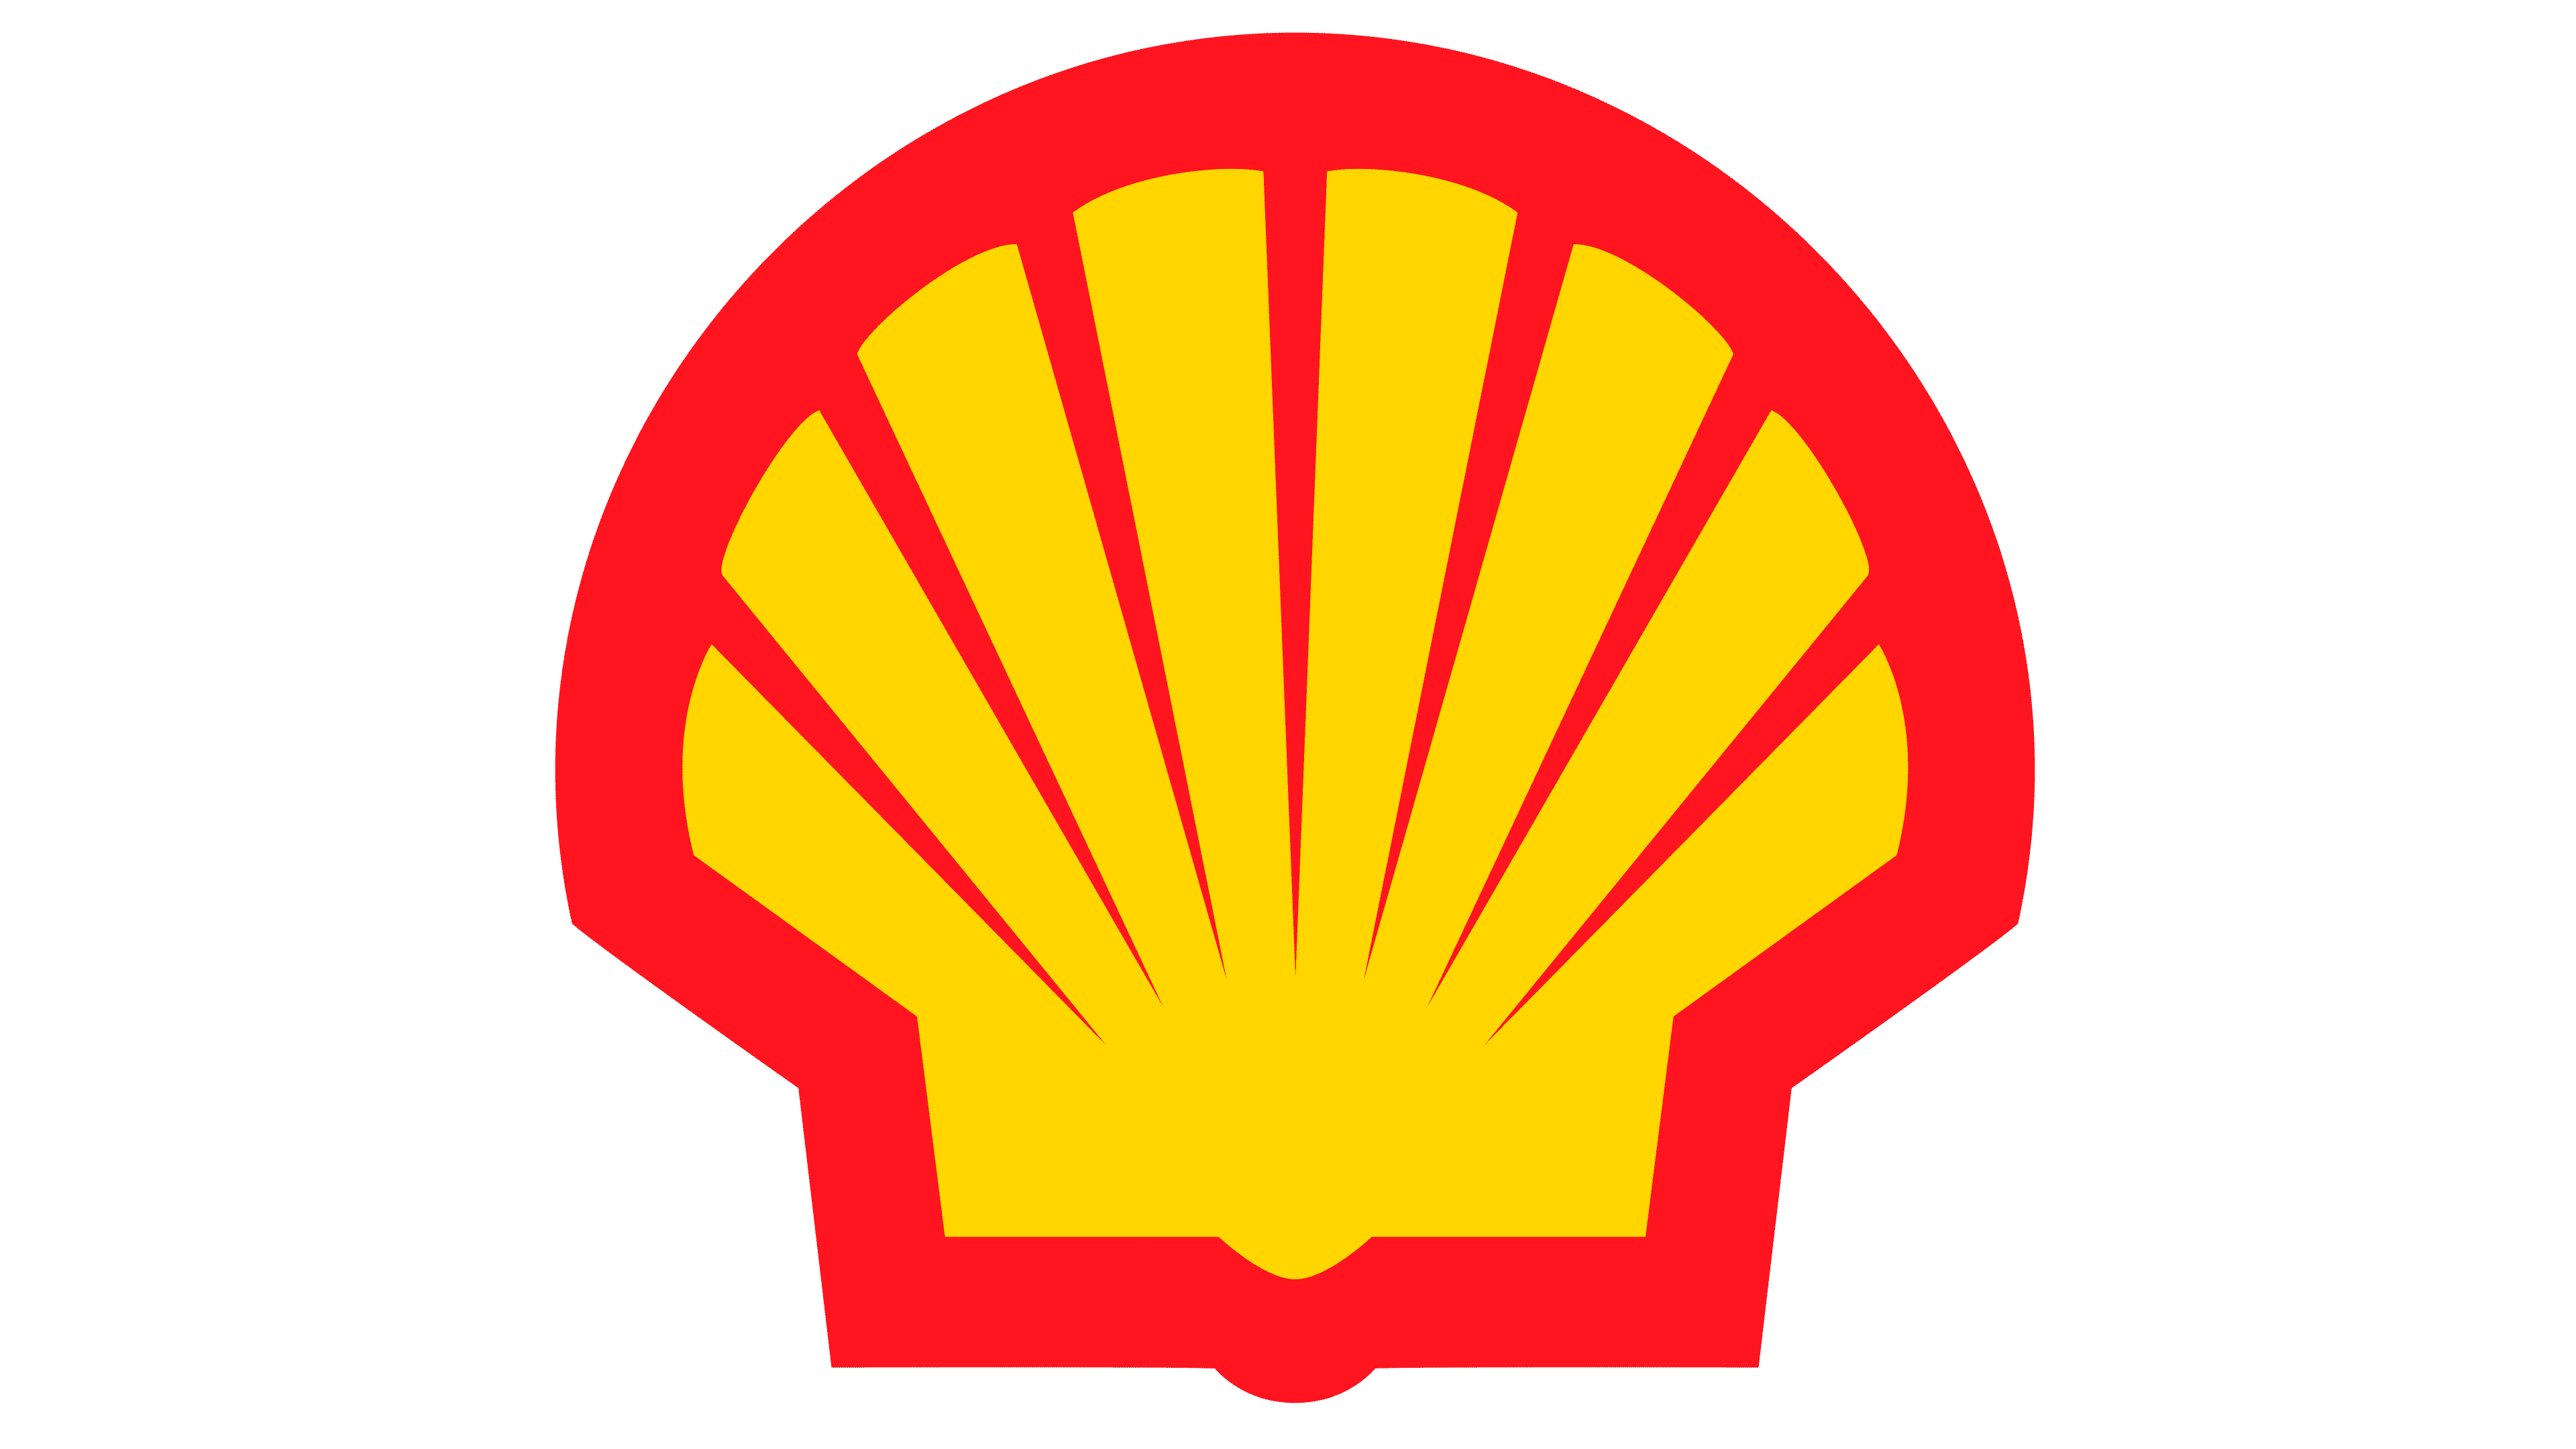 Shell company logo